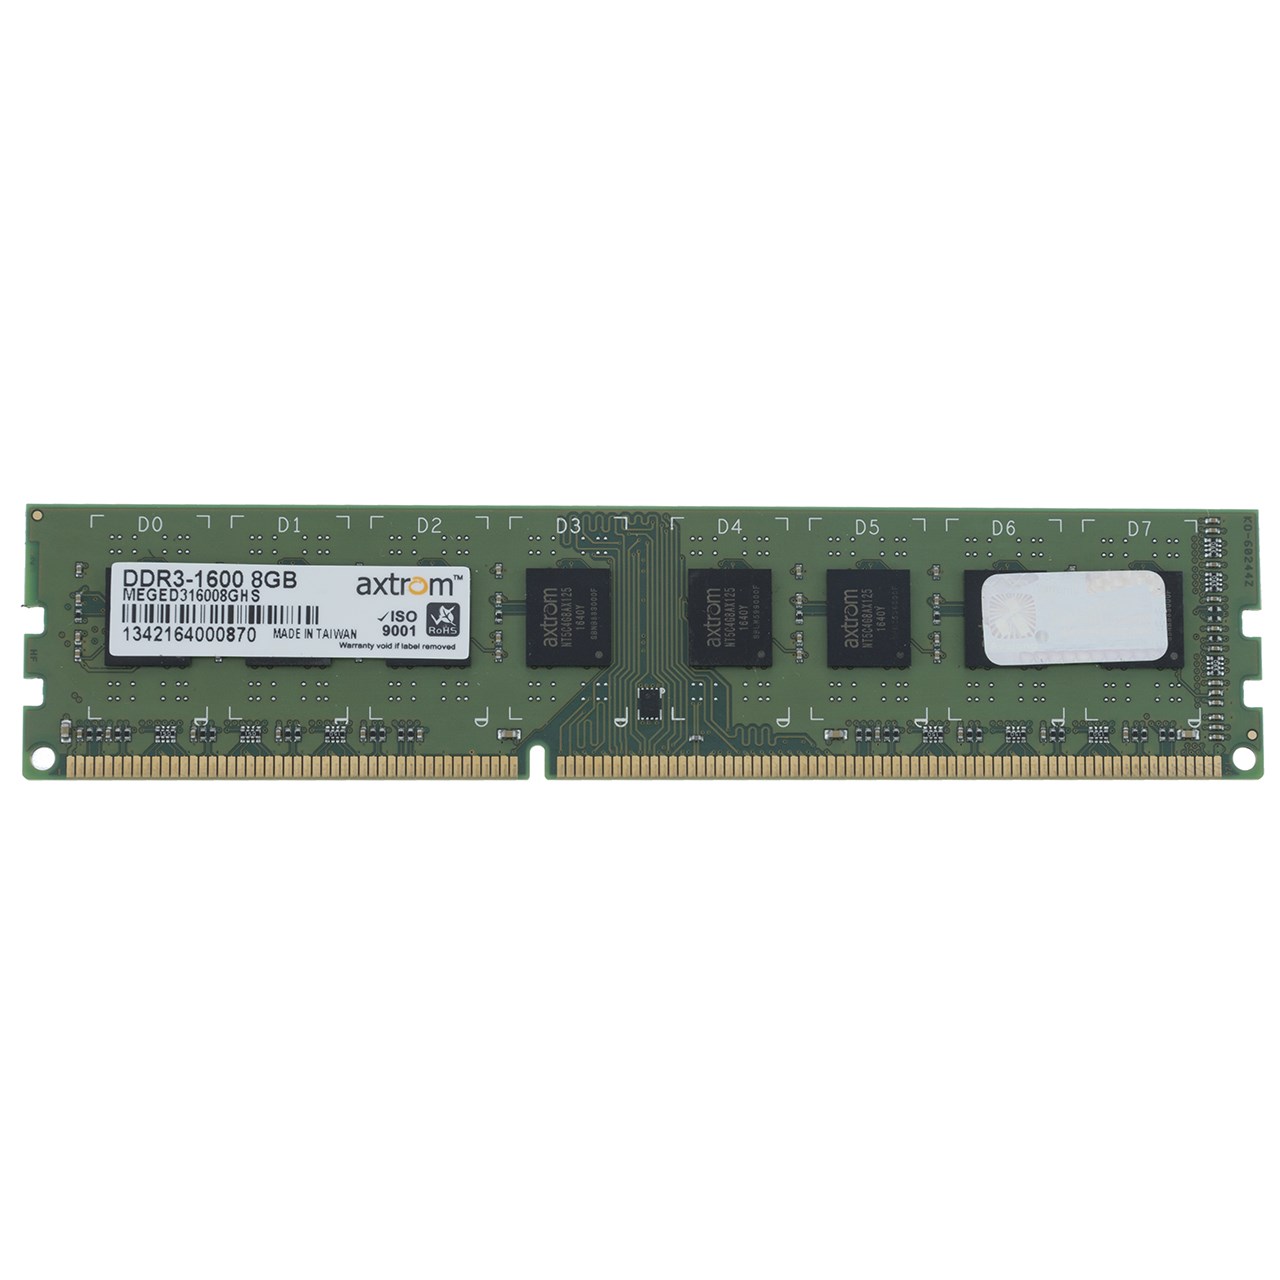 رم دسکتاپ DDR3 تک کاناله 1600 مگاهرتز اکستروم ظرفیت 8 گیگابایت